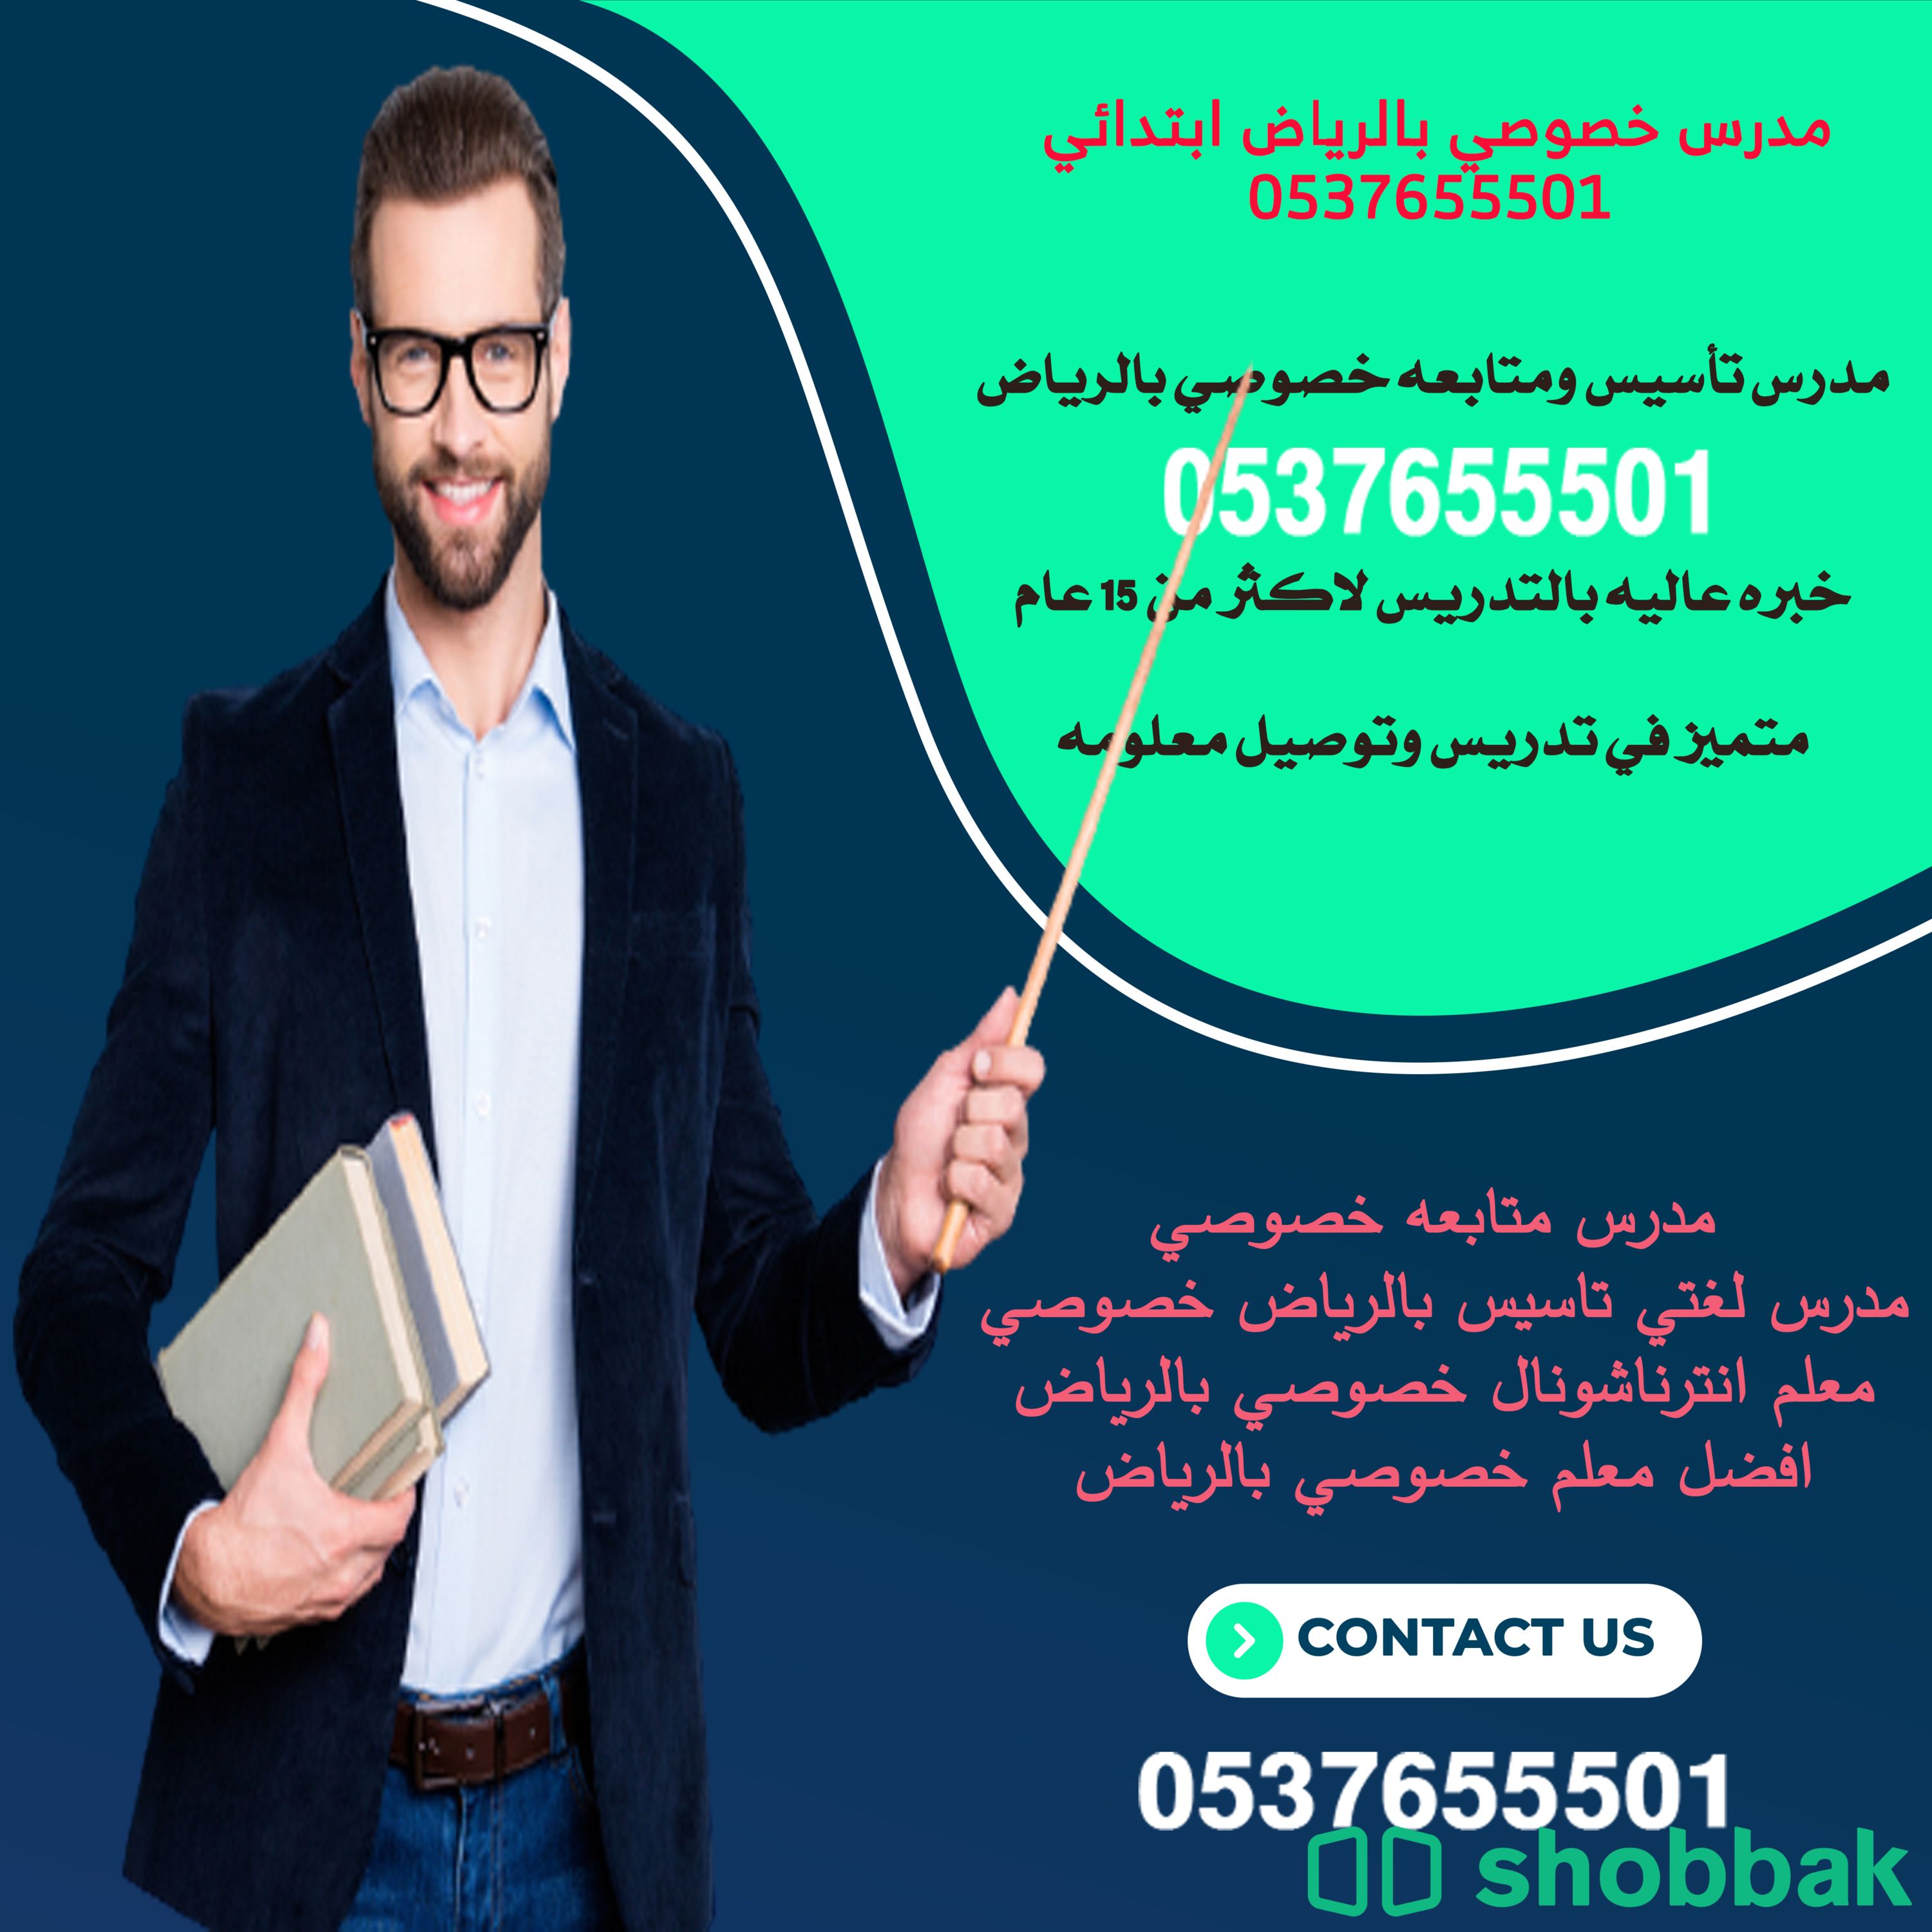 افضل مدرس خصوصي شمال الرياض 0537655501 مدرسين خصوصي في الرياض Shobbak Saudi Arabia